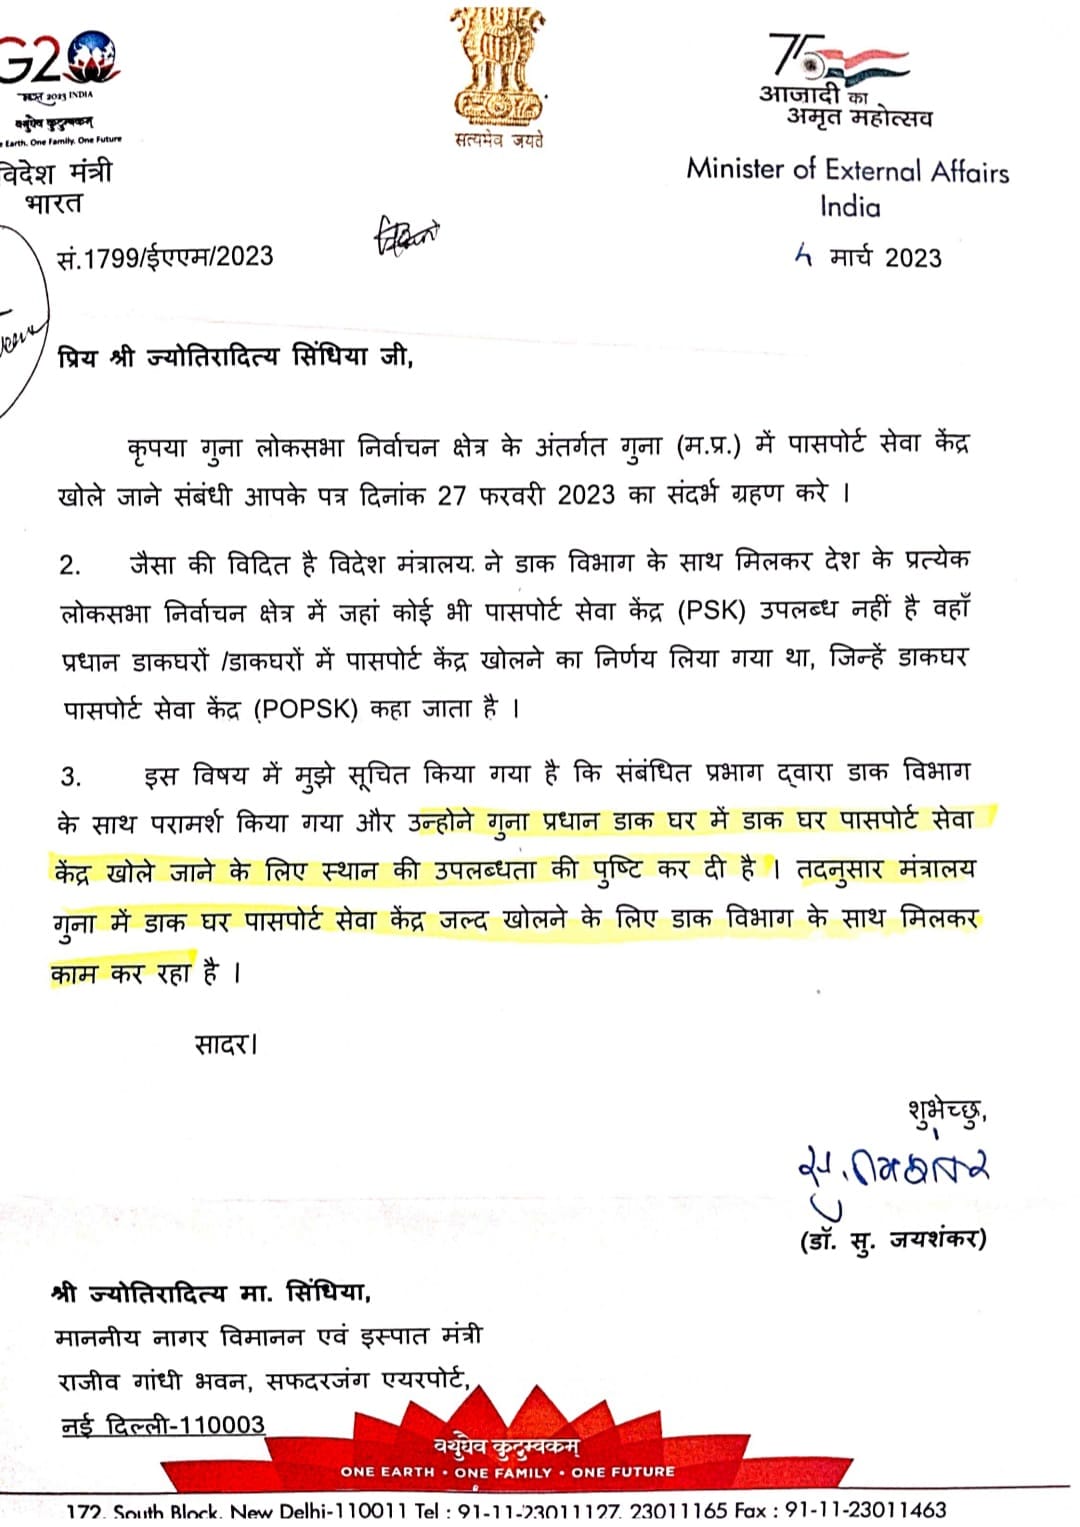 मोदी सरकार ने MP को दी सौगात, खुलेगा एक और पासपोर्ट सेवा केंद्र, सिंधिया ने लिखा था पत्र